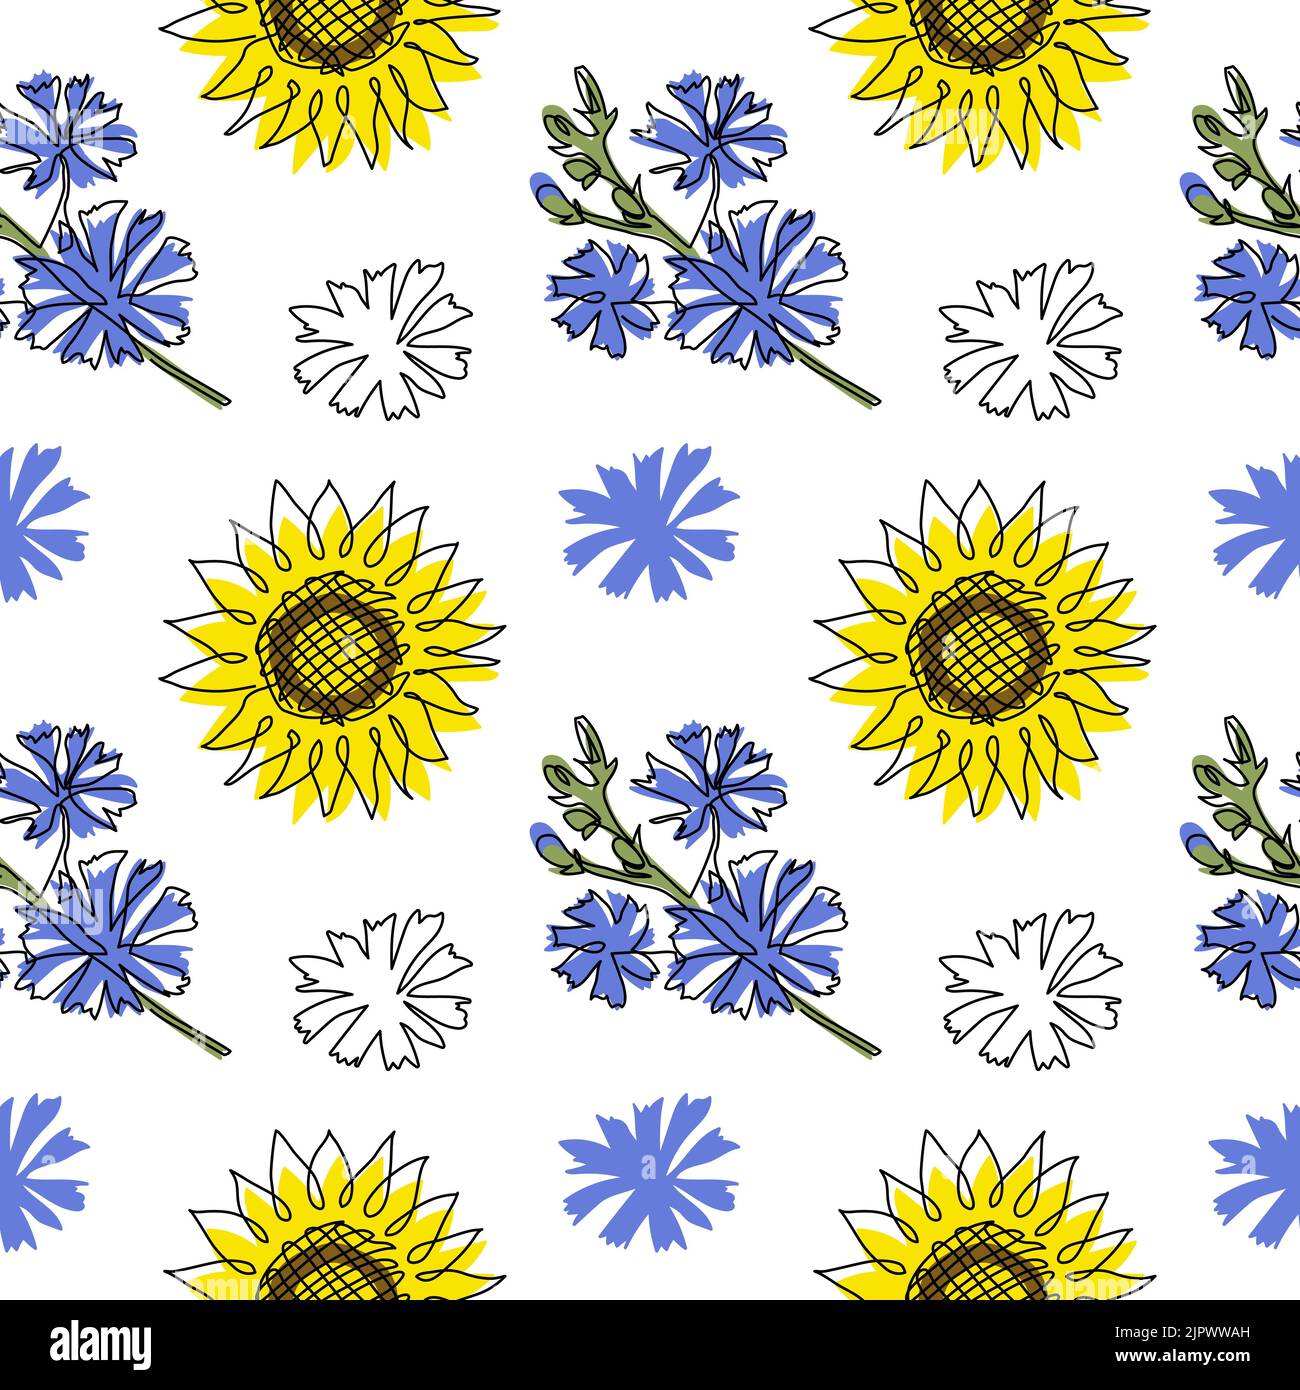 Blau und gelb ua Vektor-Muster mit Blumen. Eine kontinuierliche Linie Kunst Zeichnung Muster mit Sonnenblume und Zichorie Stock Vektor